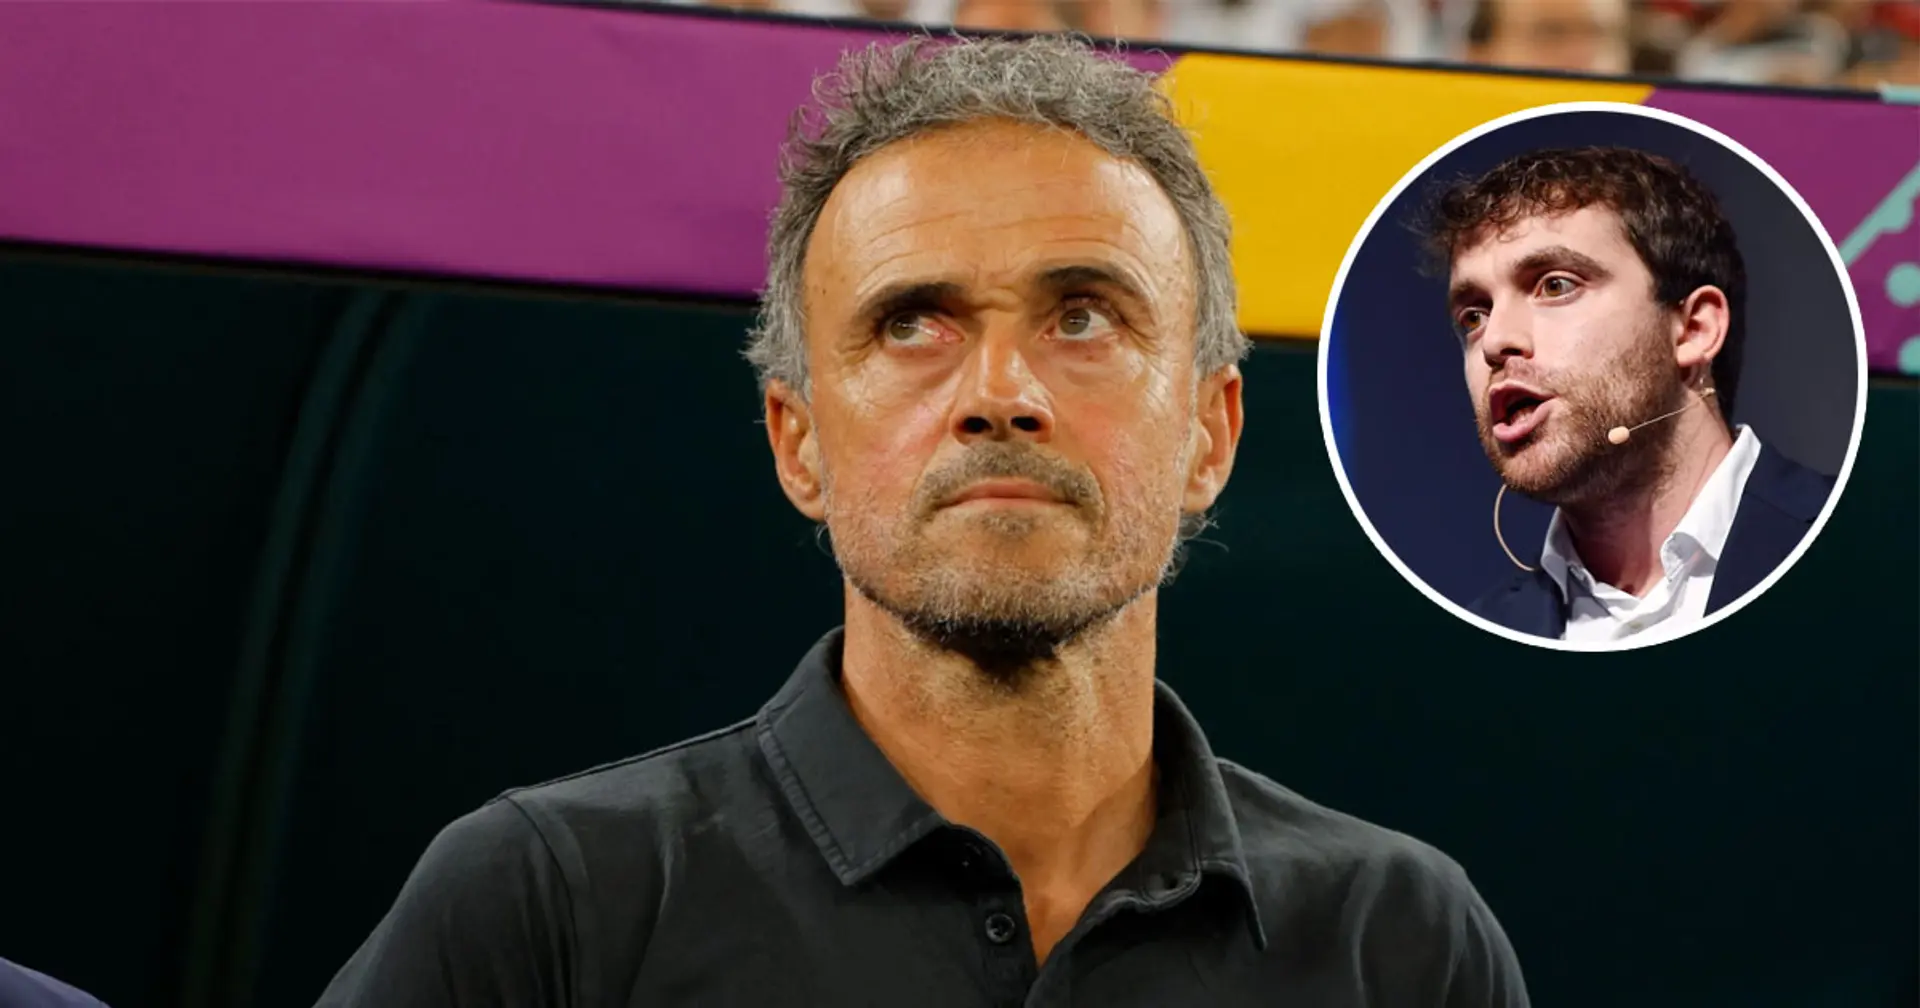 Fabrizio Romano reveals Luis Enrique future plans after losing Spain job (reliability: 5 stars)